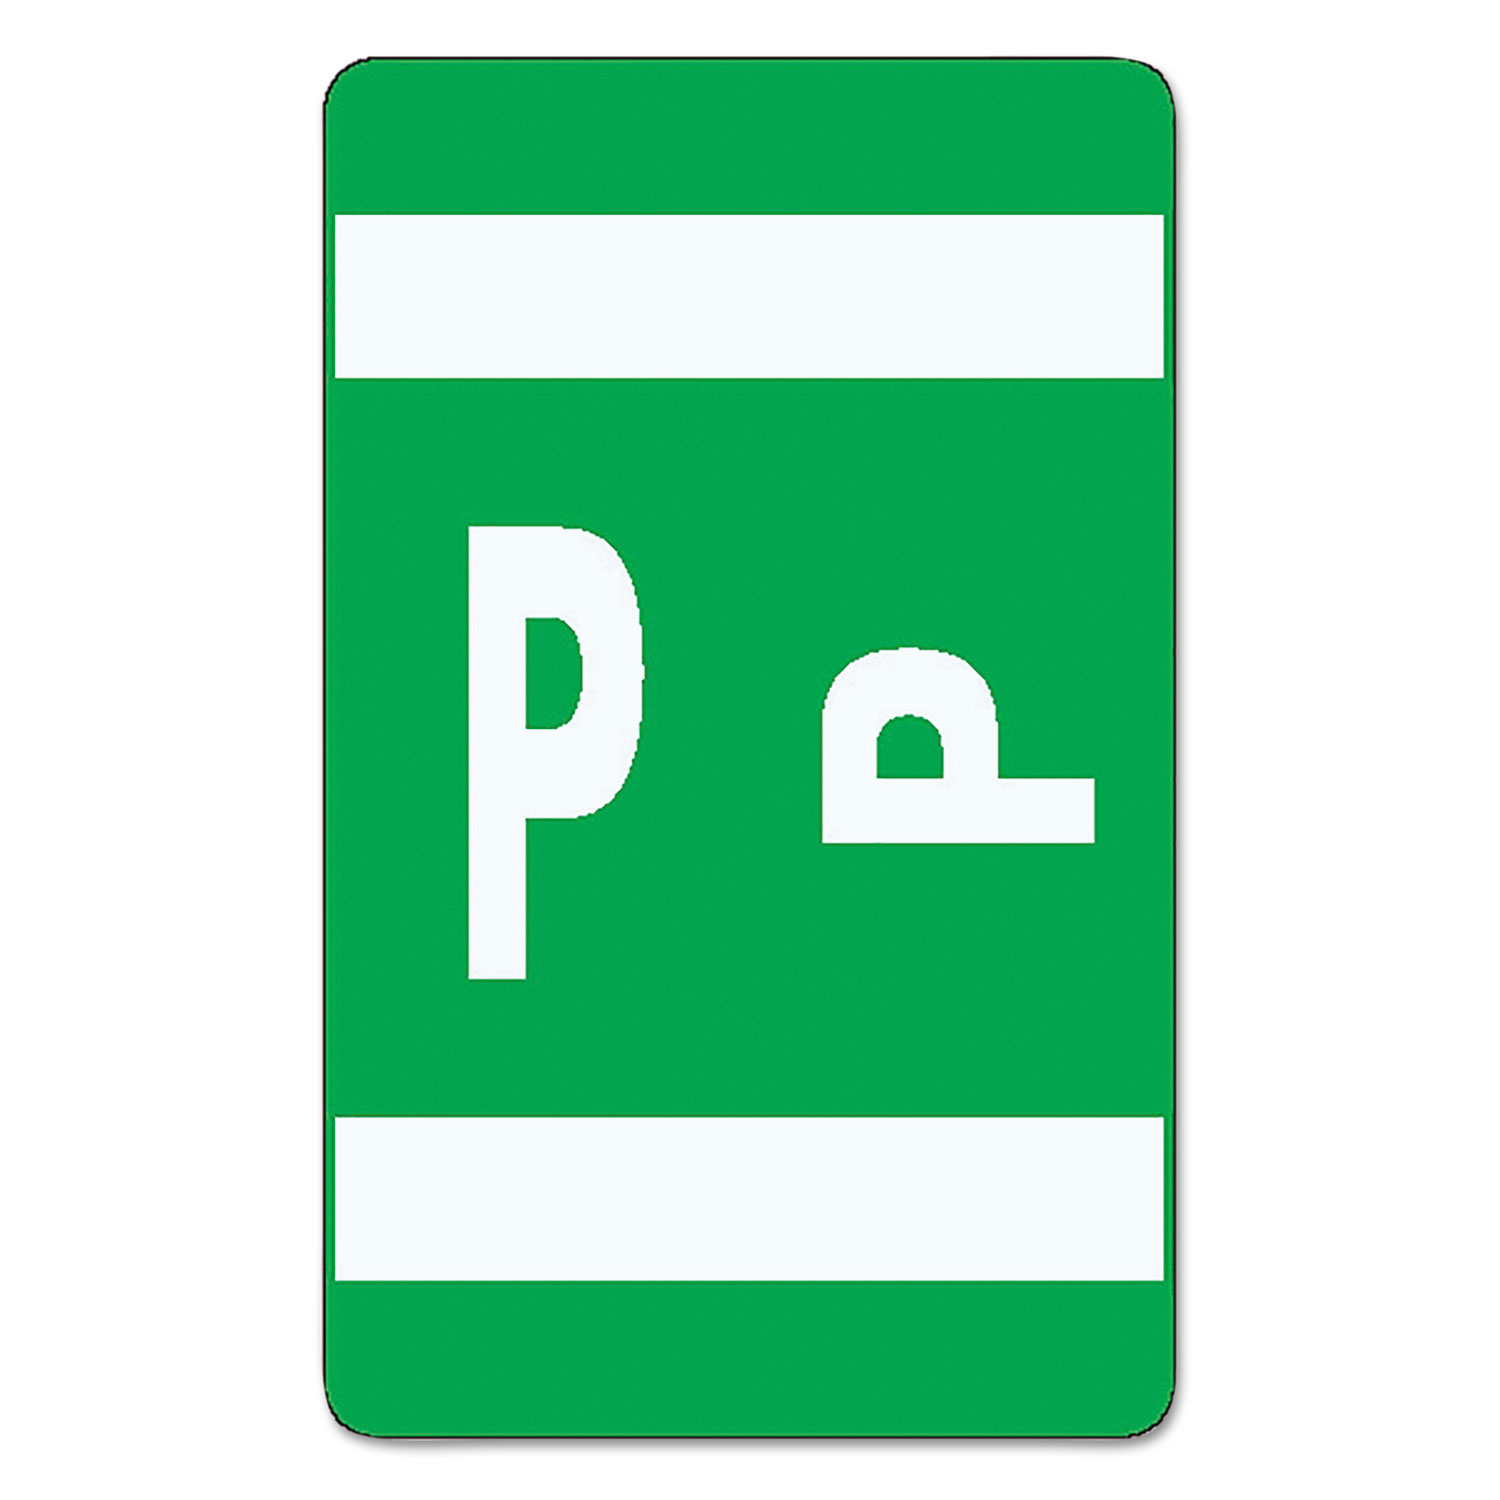 Alpha-Z Color-Coded Second Letter Labels, Letter P, Dark Green, 100/Pack